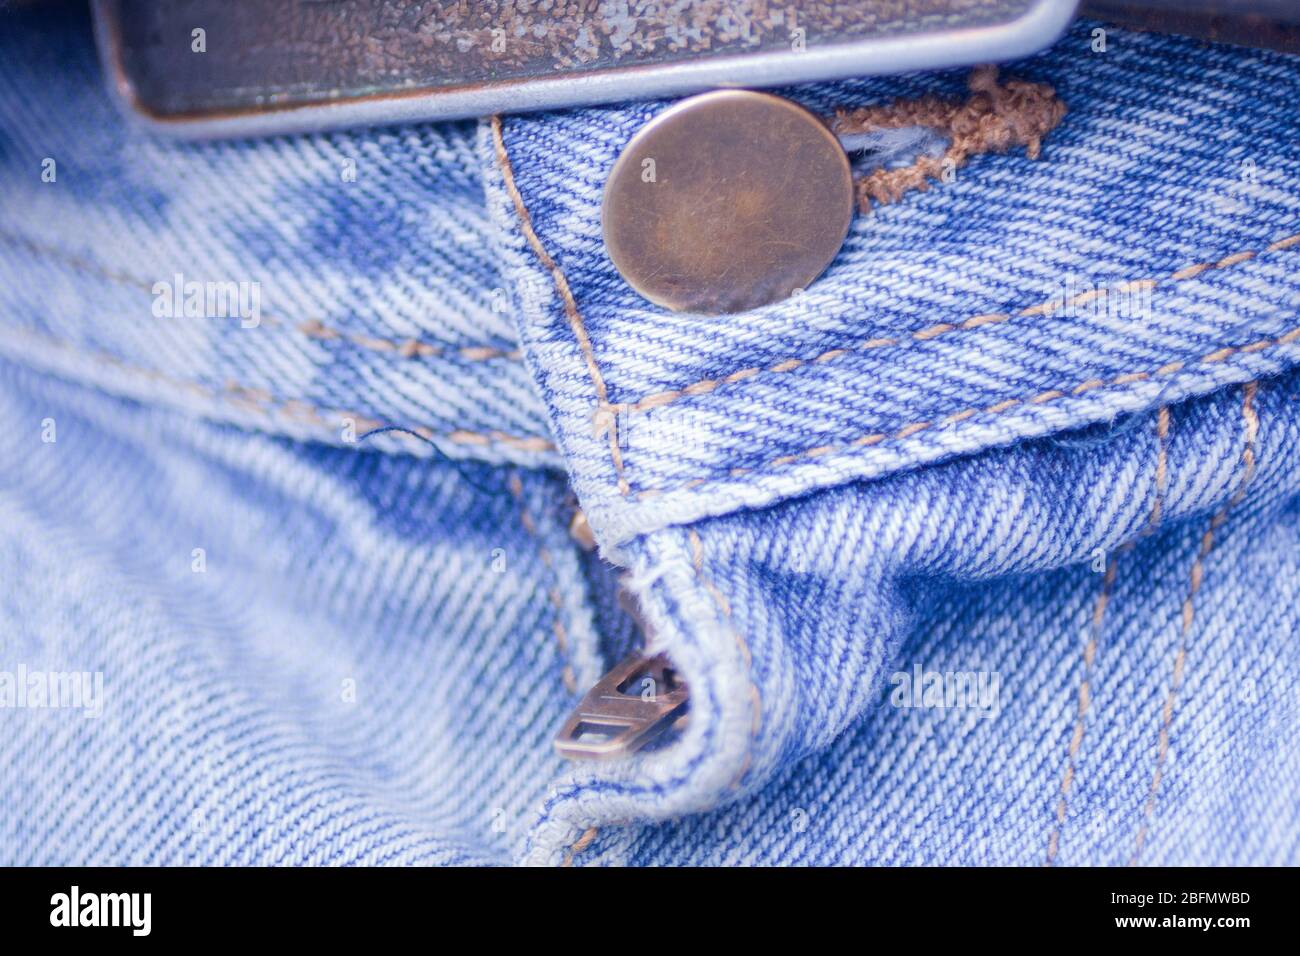 Gros plan sur une boucle de ceinture, un bouton et une fermeture éclair de jeans bleus. Vue macro du bouton, de la fermeture éclair et de la texture du tissu denim bleu pâle. Banque D'Images